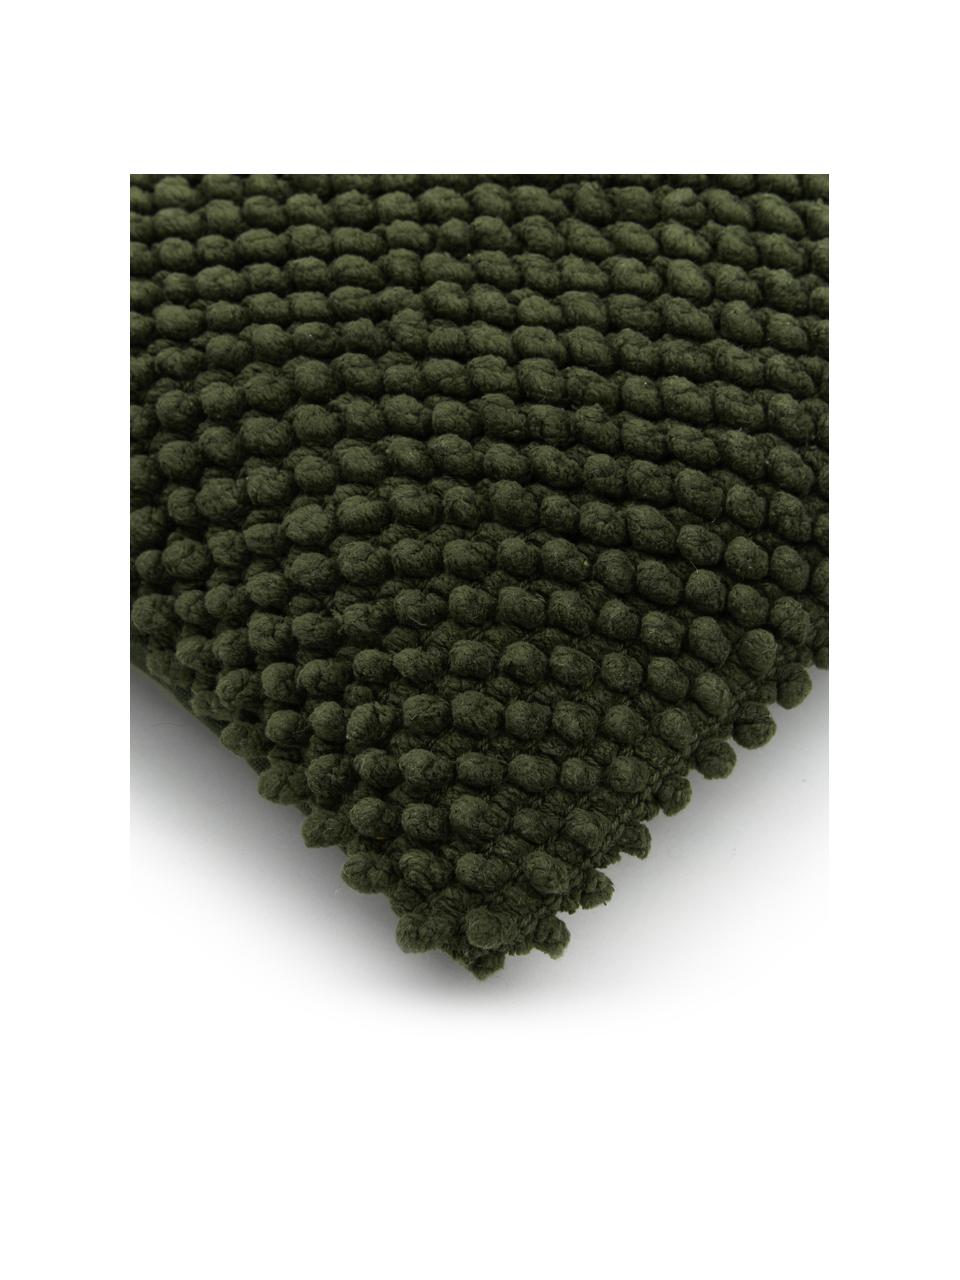 Kissenhülle Indi mit strukturierter Oberfläche in Dunkelgrün, 100% Baumwolle, Dunkelgrün, 30 x 50 cm